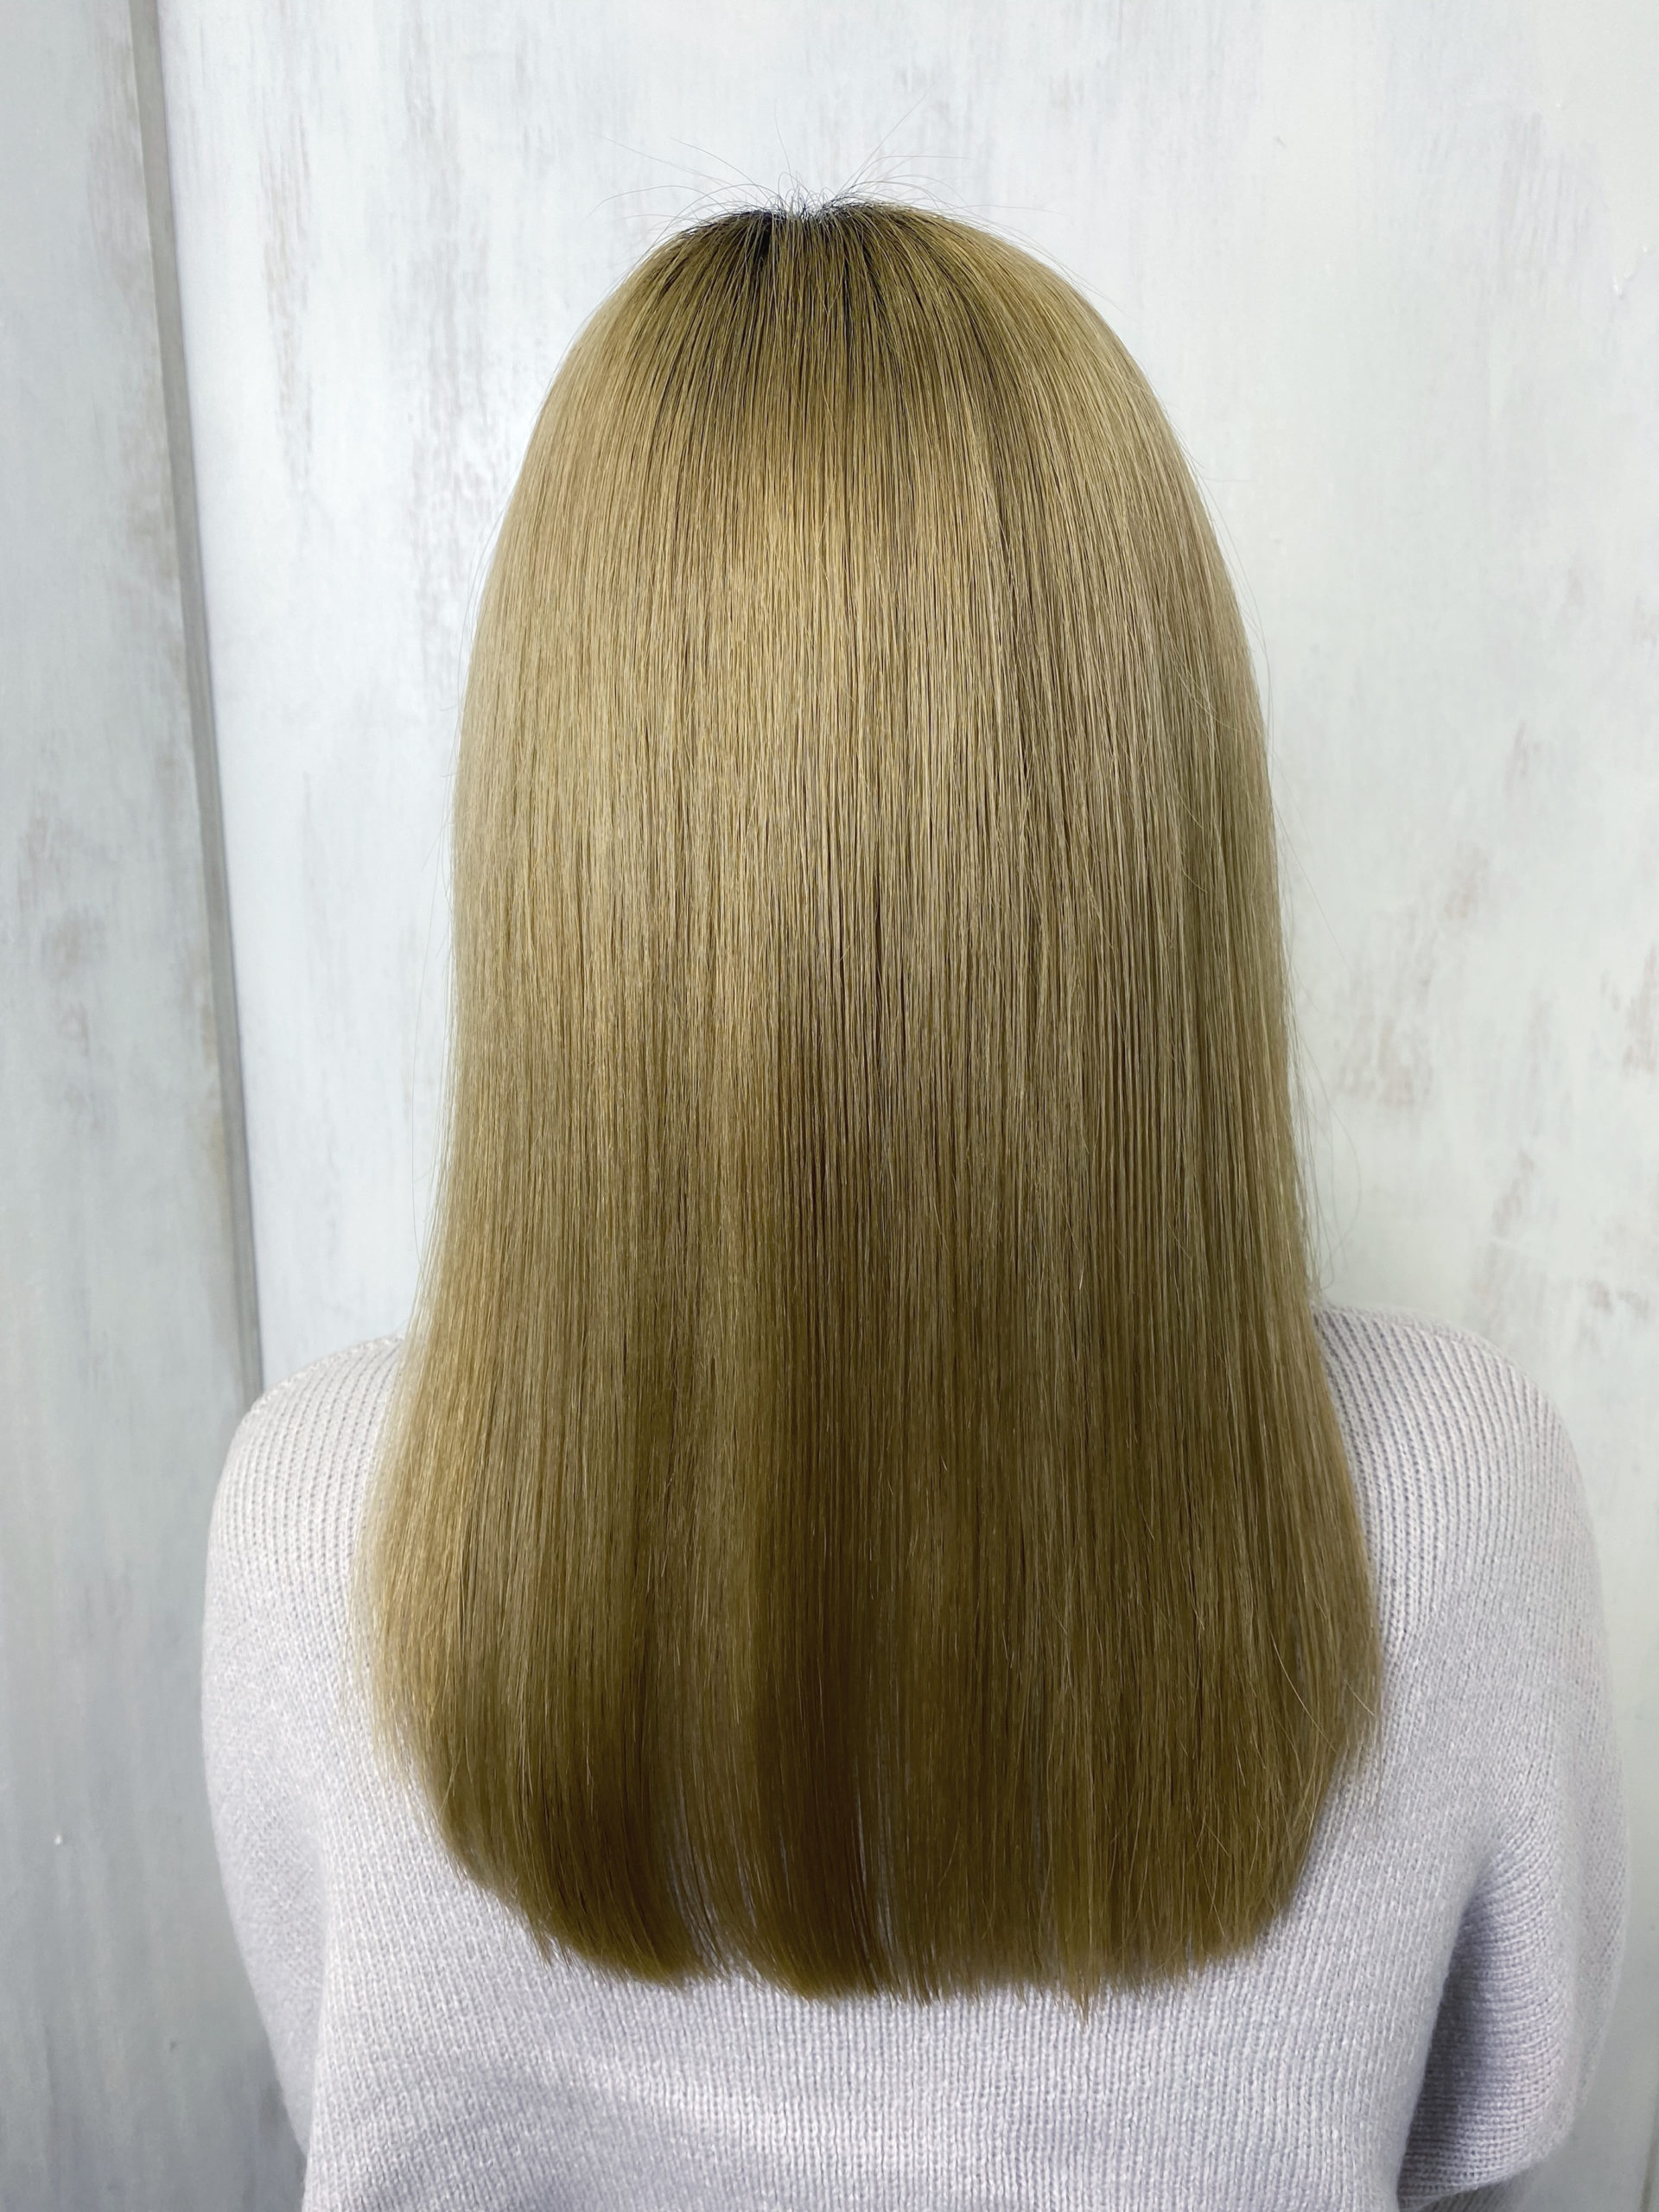 ブリーチ毛の縮毛矯正をジュエリーシステムシリーズで艶髪。原宿・表参道『髪のお悩みを解決するヘアケア美容師の挑戦』